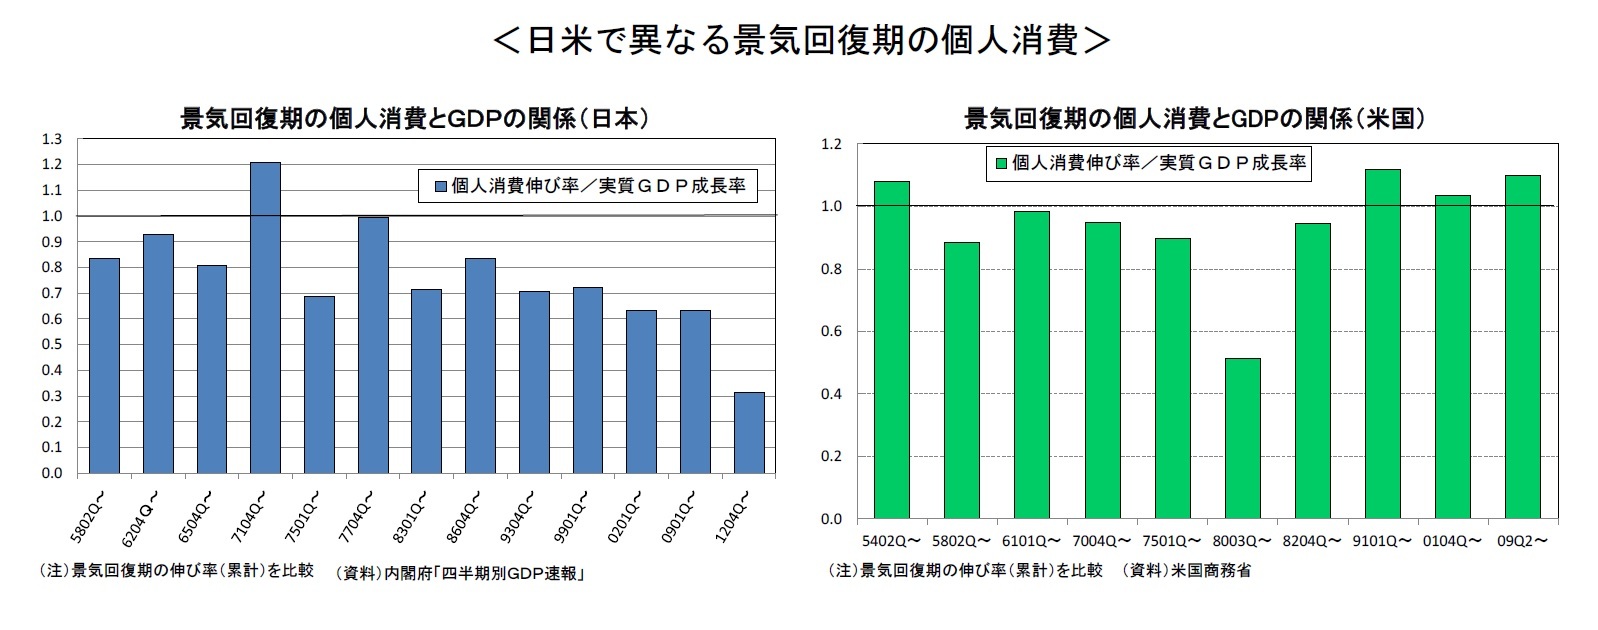 ＜日米で異なる景気回復期の個人消費＞景気回復期の個人消費とＧＤＰの関係（日本）/景気回復期の個人消費とGDPの関係（米国）